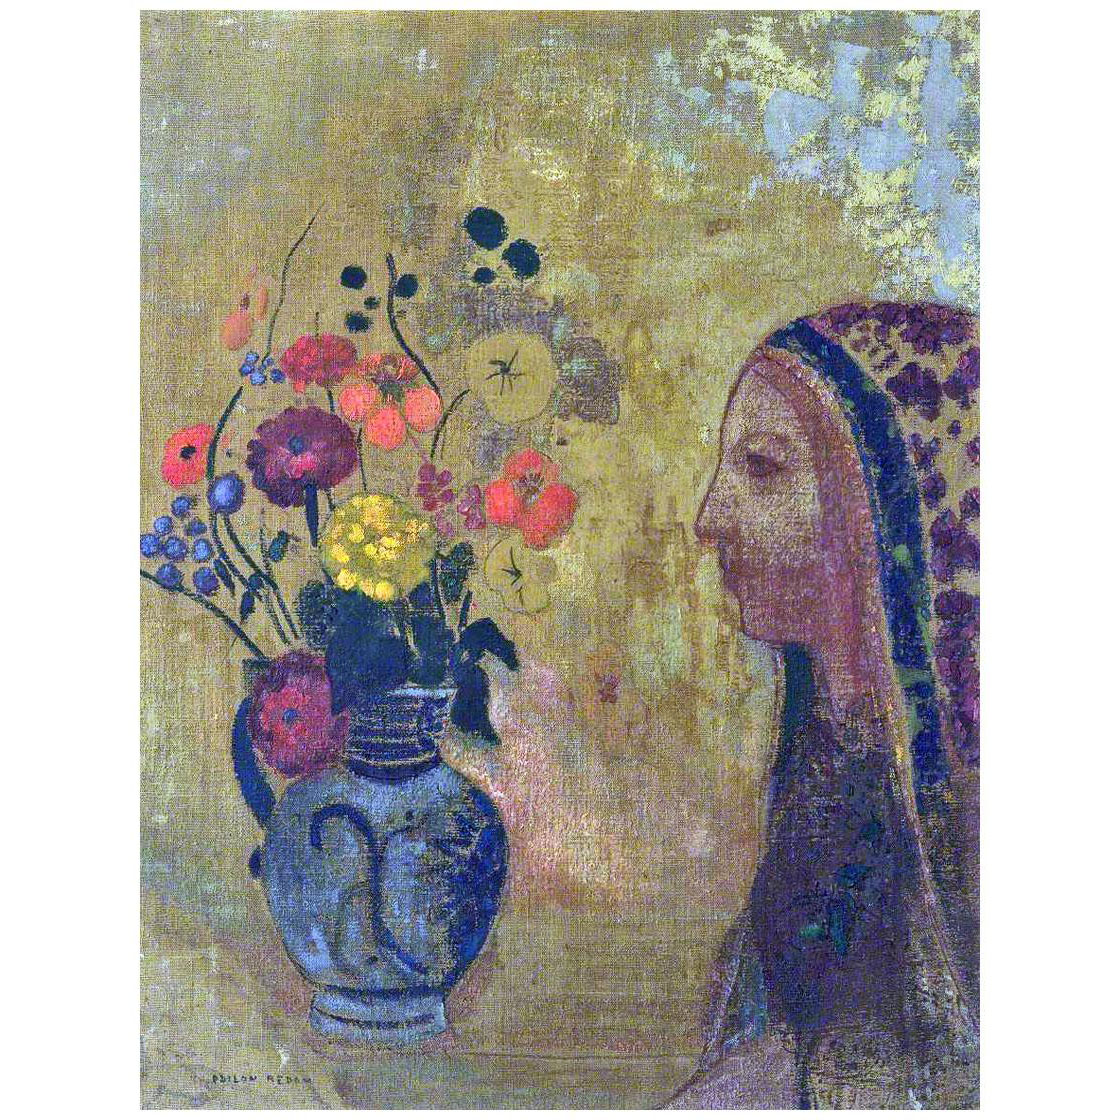 Odilon Redon. Femme avec vase de fleurs. 1905. Tate Modern